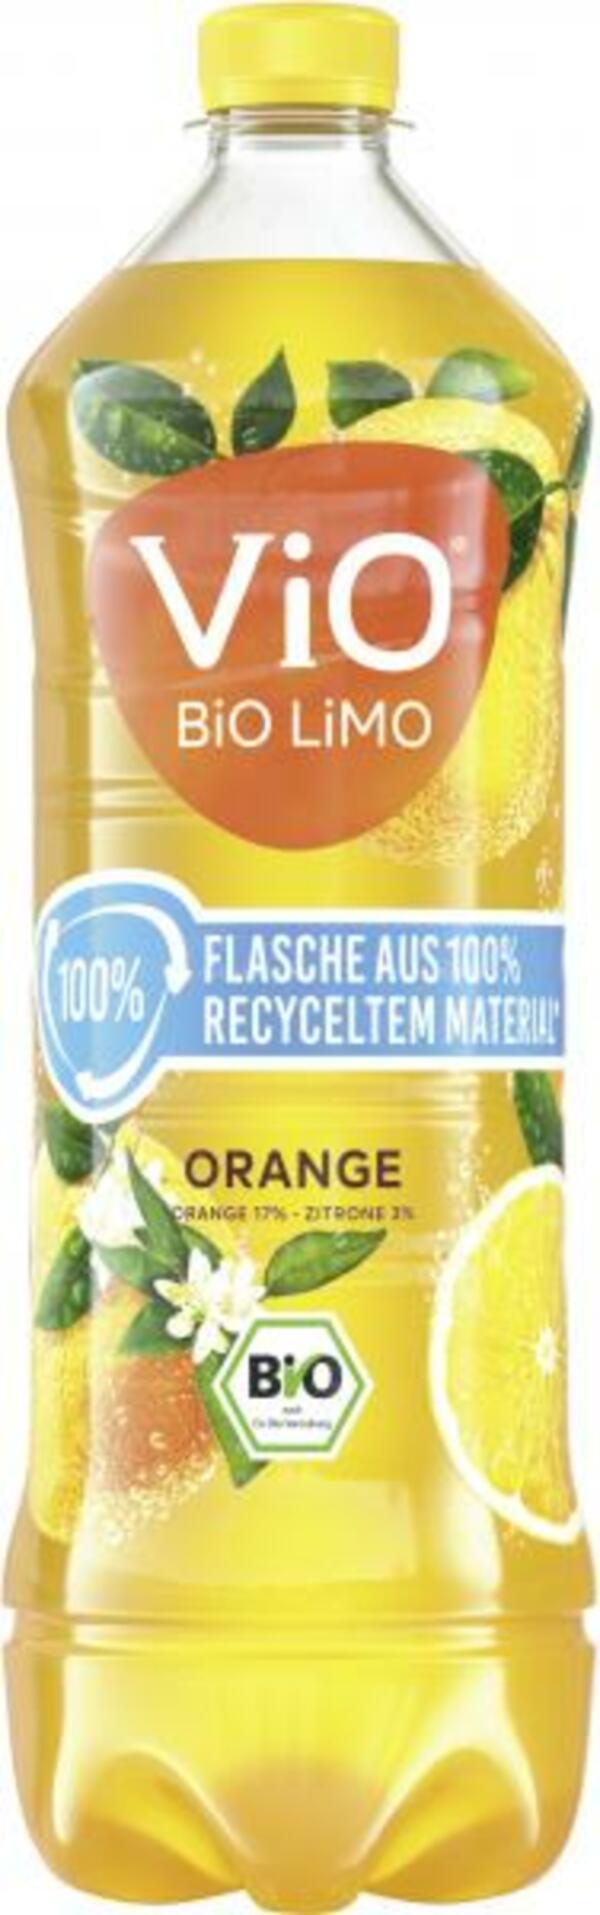 Bild 1 von Vio Bio Limo Orange (Einweg)